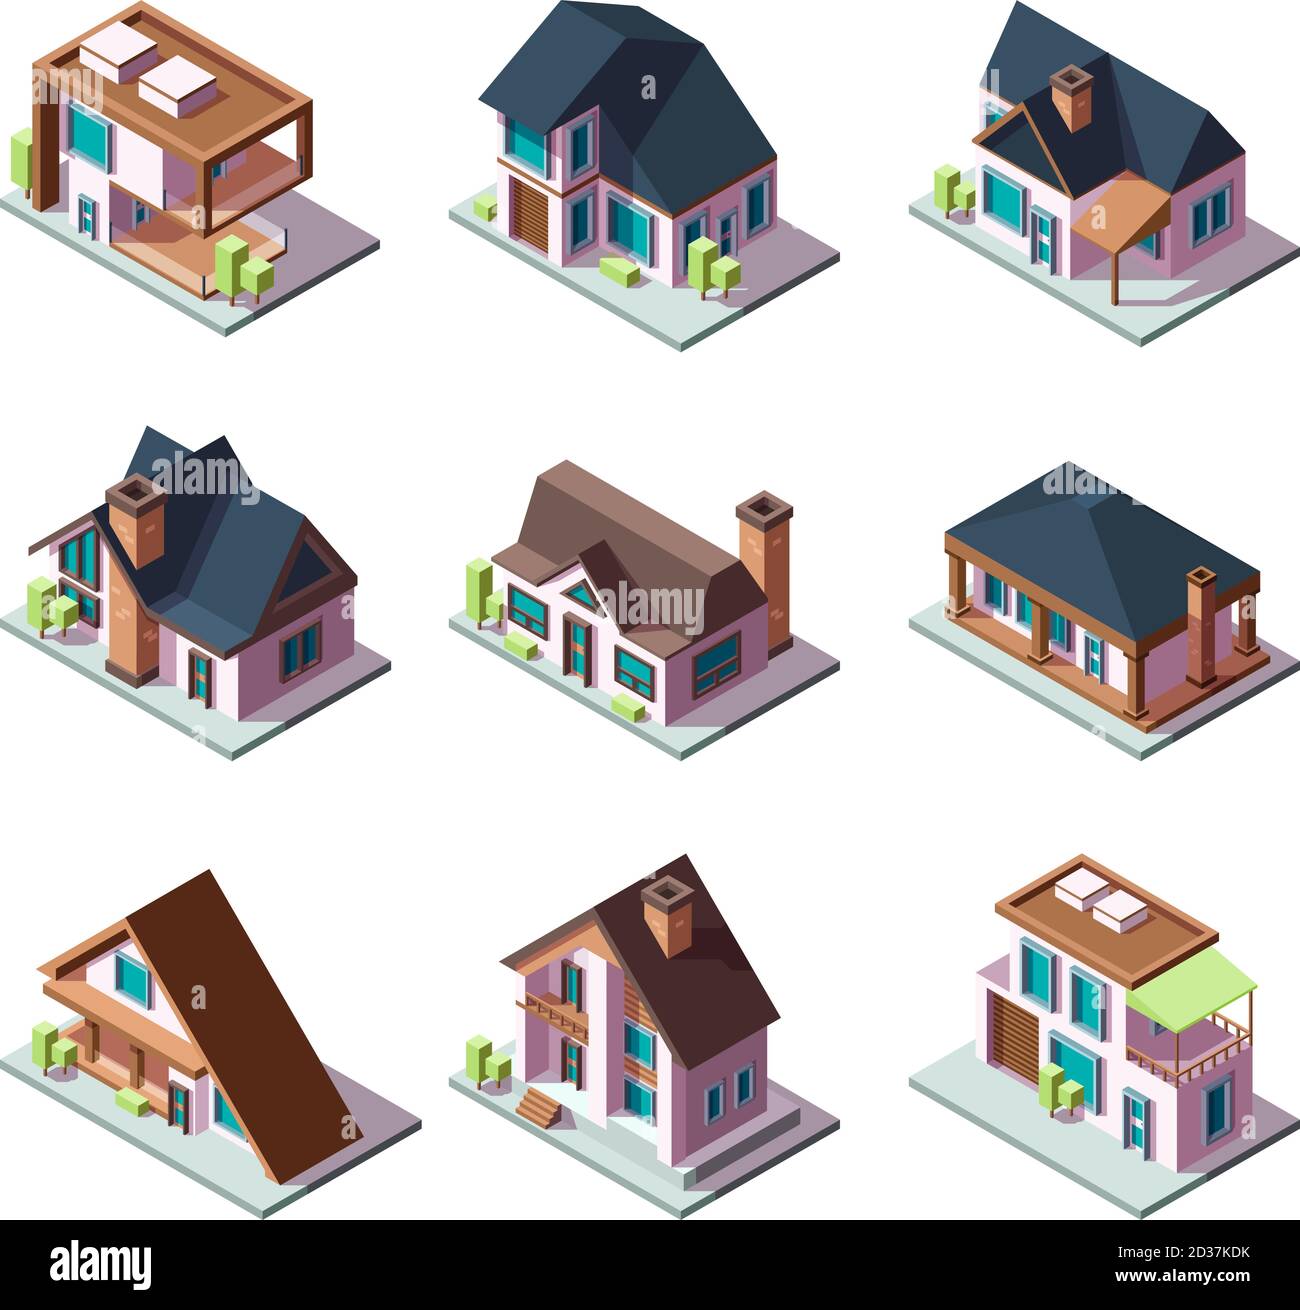 Private moderne Häuser. Stadt Wohnmodelle von Gebäuden Miniatur 3d Low-Poly-Vektor isometrische Illustrationen Stock Vektor